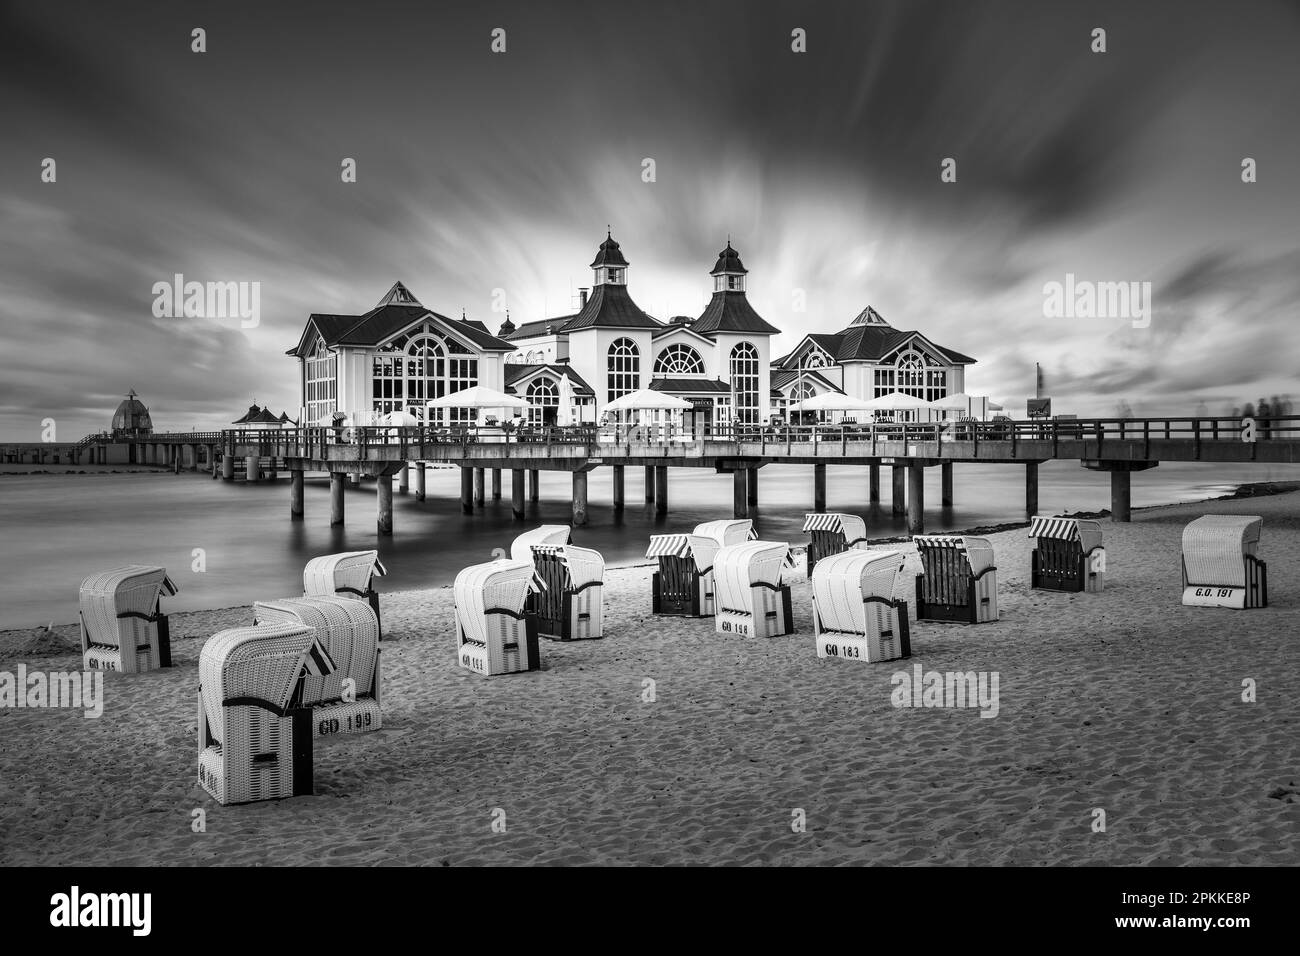 Jetée et chaises de plage sur la plage de Sellin, île de Ruegen, Mer Baltique, Mecklembourg-Poméranie occidentale, Allemagne, Europe Banque D'Images